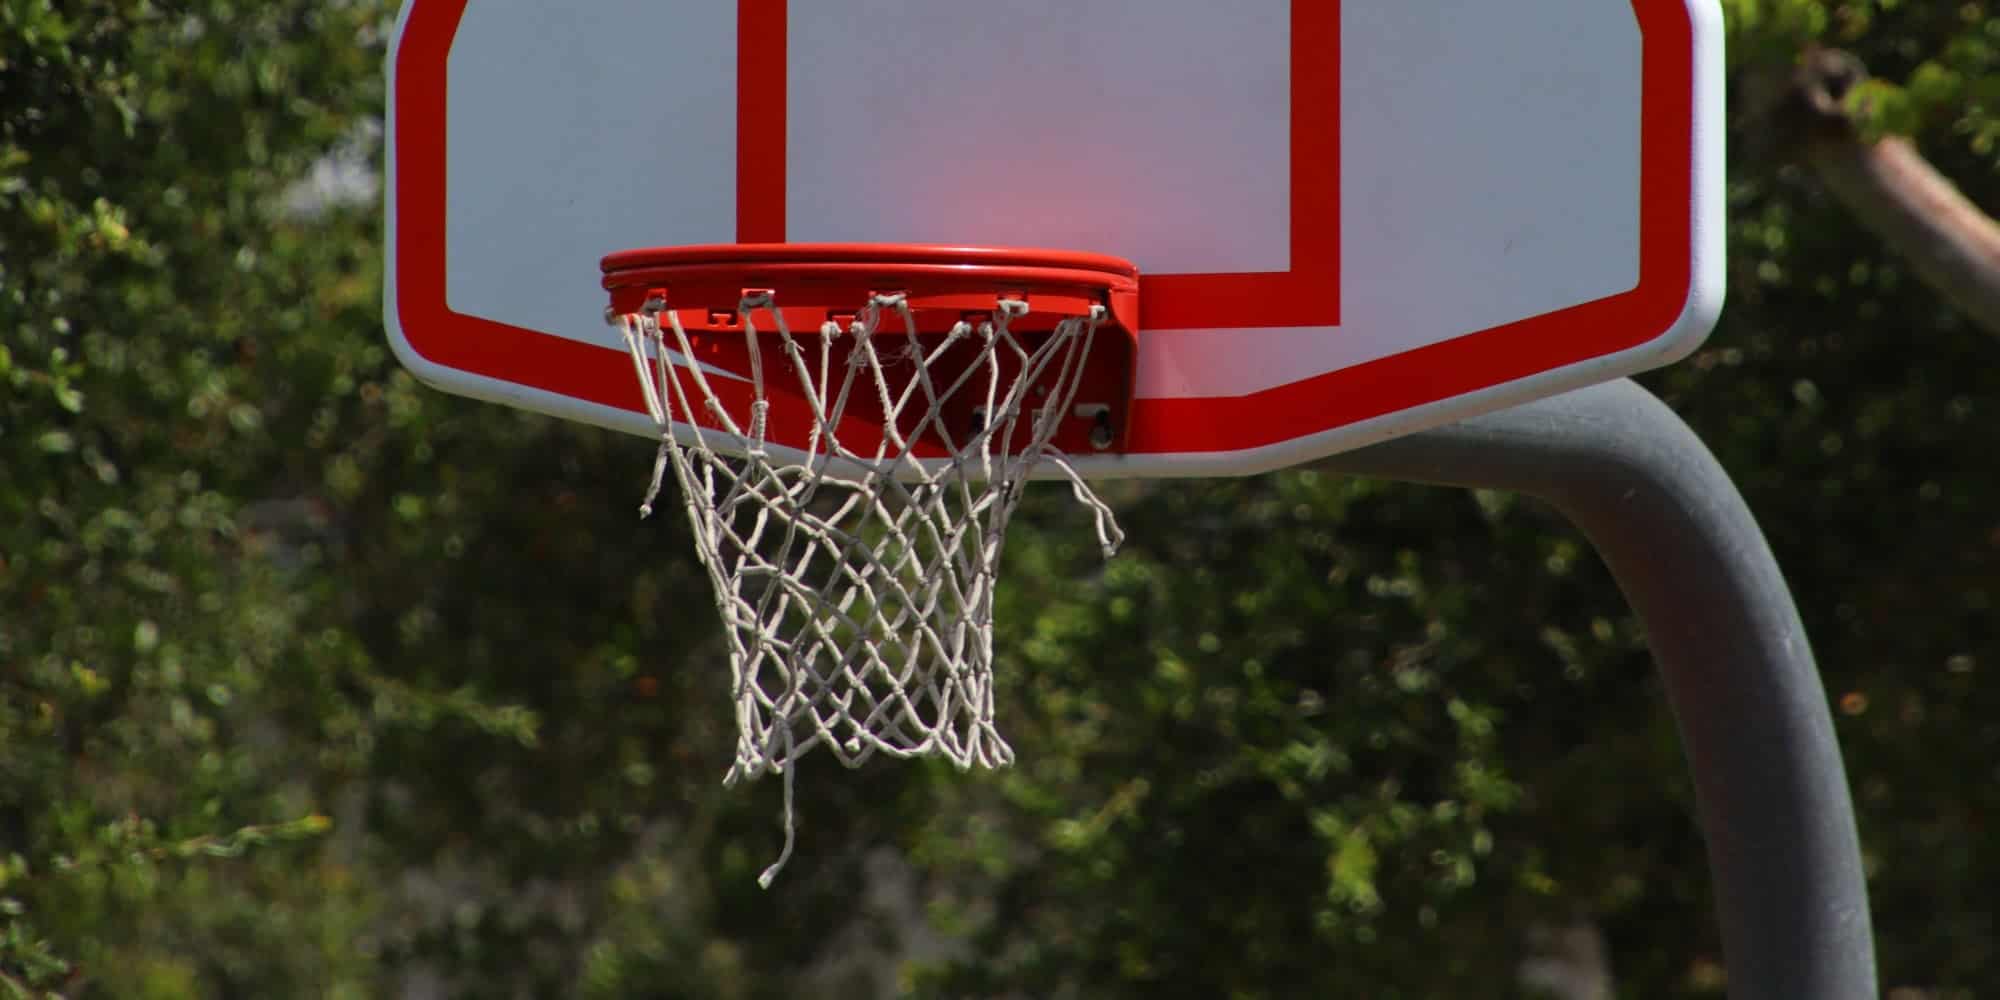 double rim basketball hoop